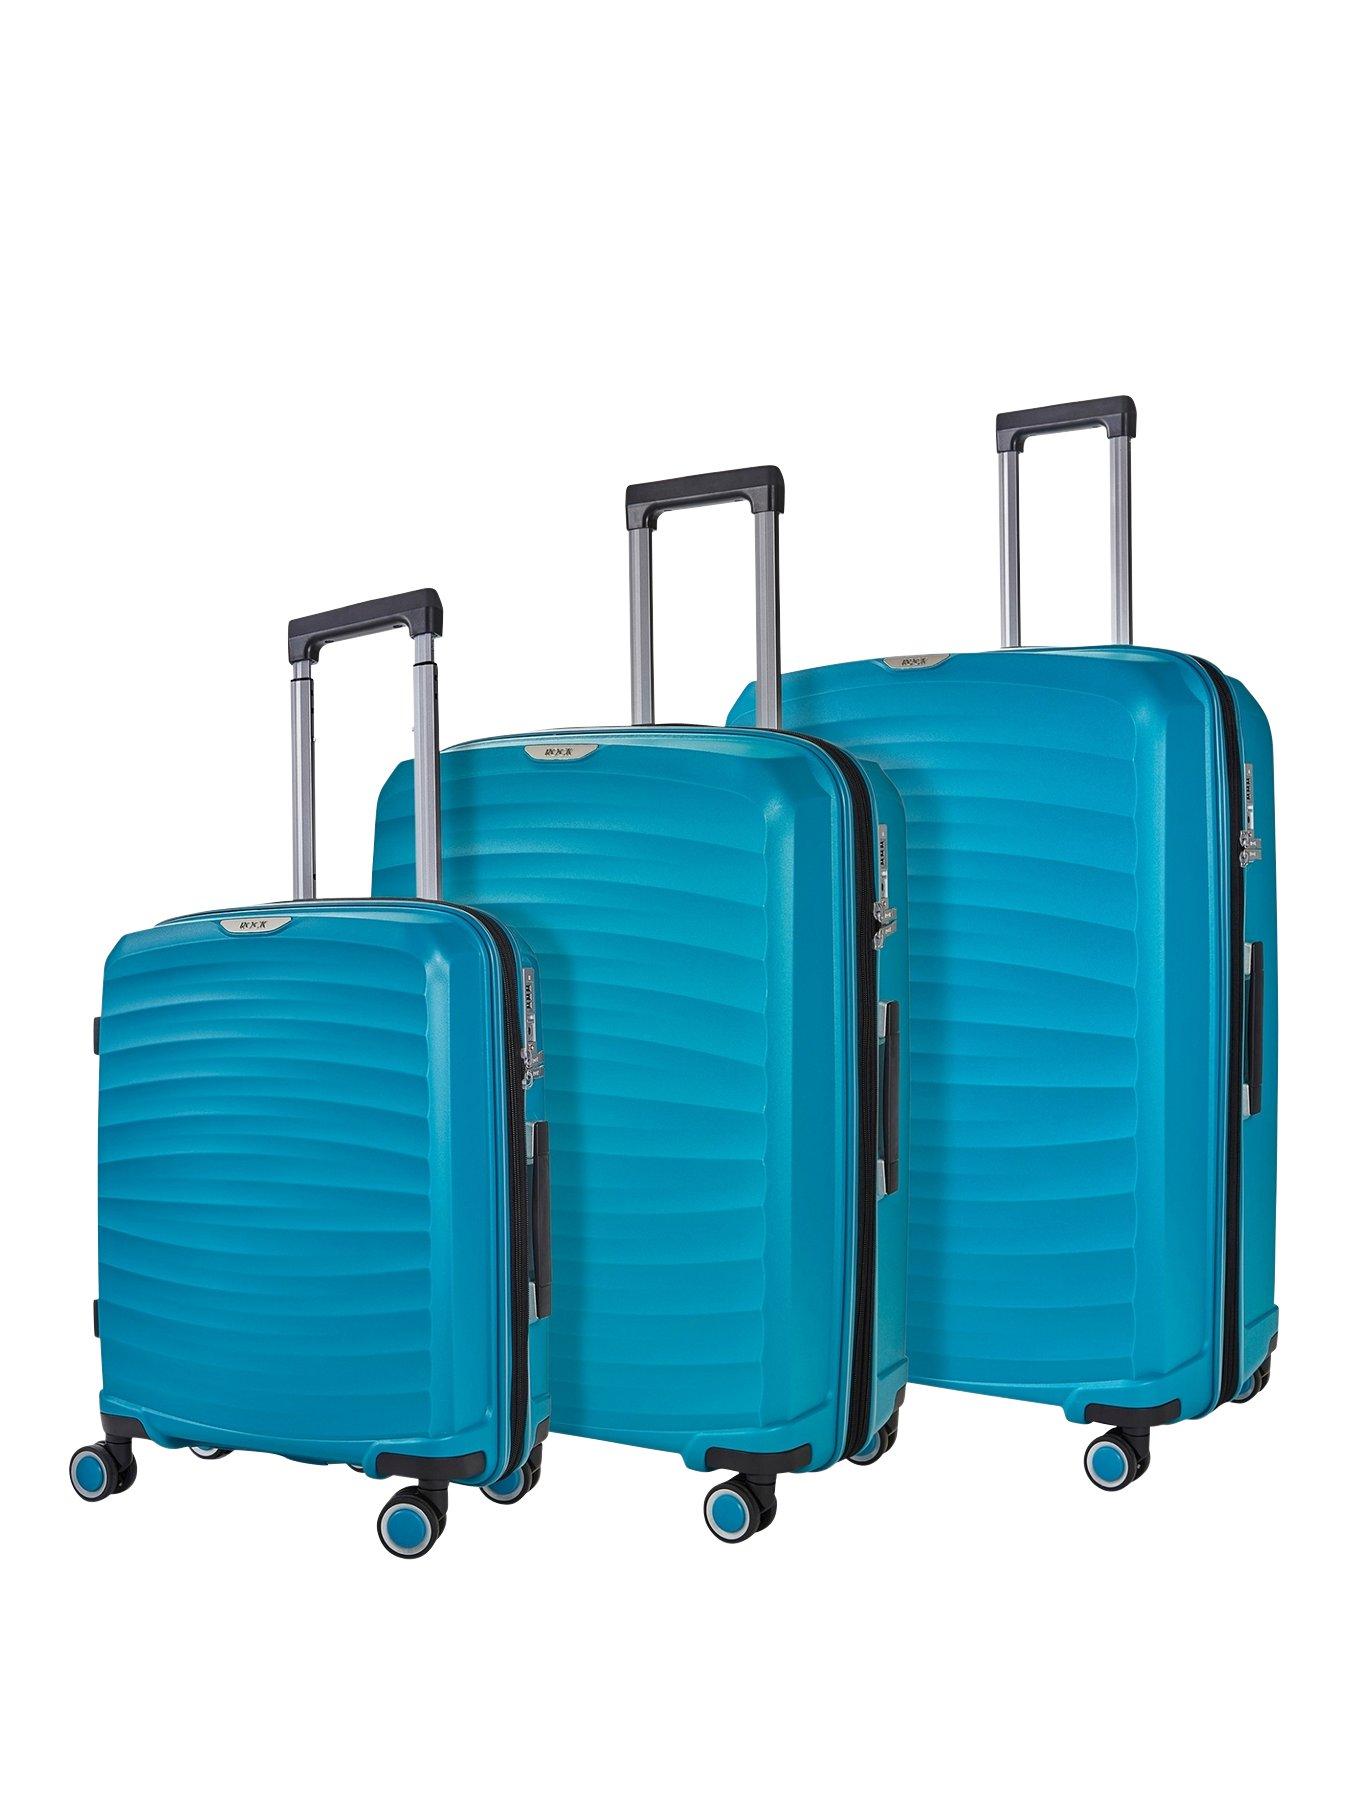 Rock Luggage Sunwave 8-Wheel Suitcases - 3 piece Set - Blue | very.co.uk